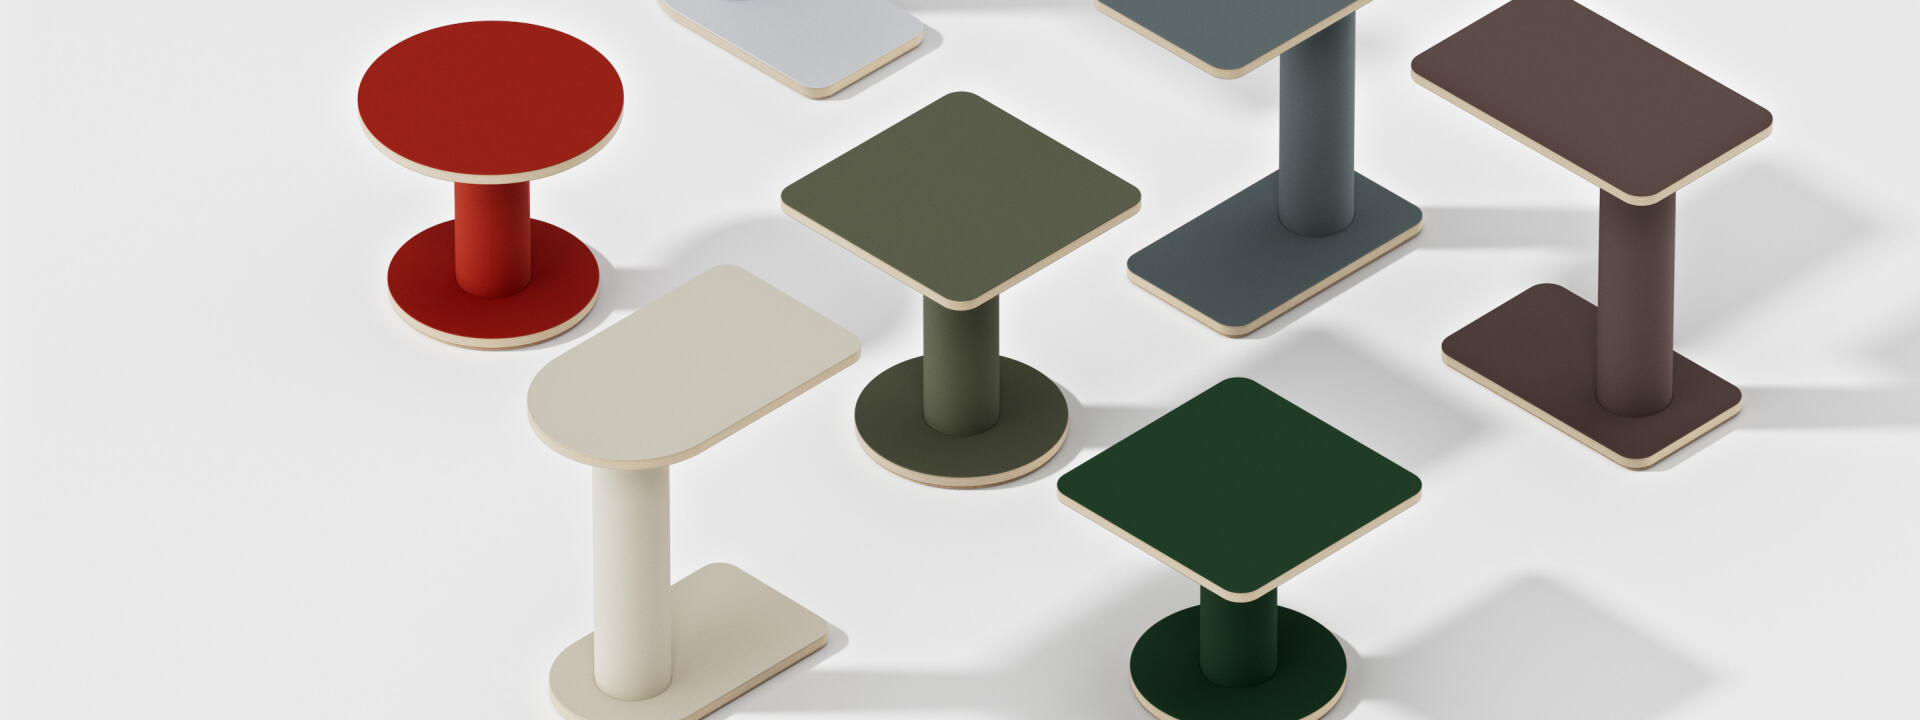 Eine Kollektion von OFF-CUT Beistelltischen, entworfen von BIG-GAME, erhältlich in halbrunden, rechteckigen, runden und quadratischen Formaten, mit verschiedenen Linoleum-Farbkombinationen.